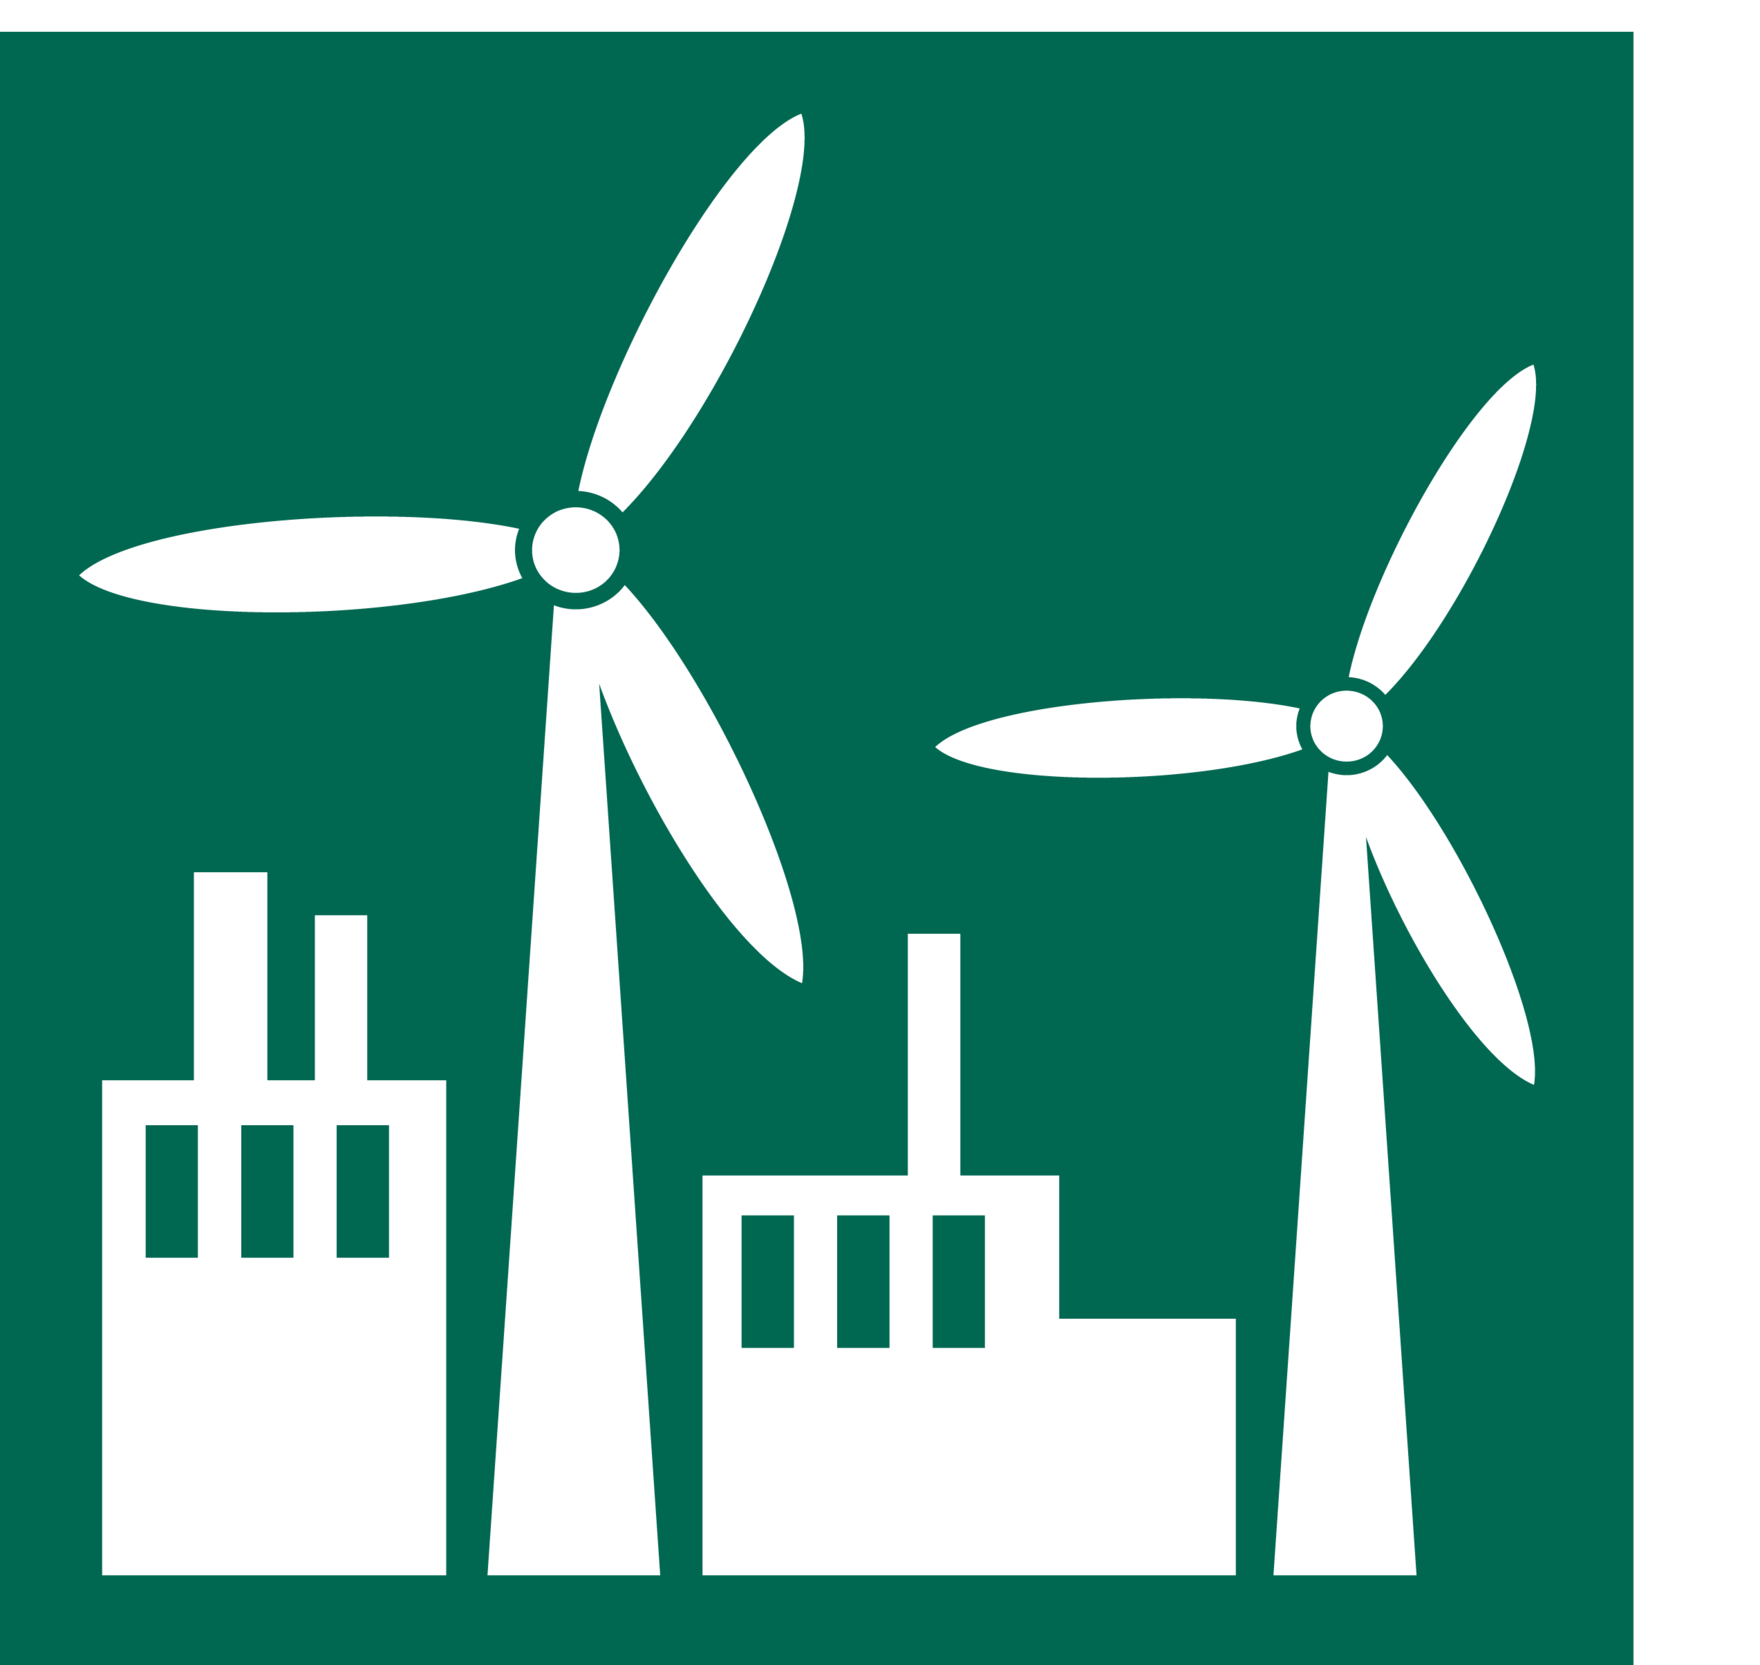 Das Bild zeigt das Piktogramm zum Thema Industrie und Energie.